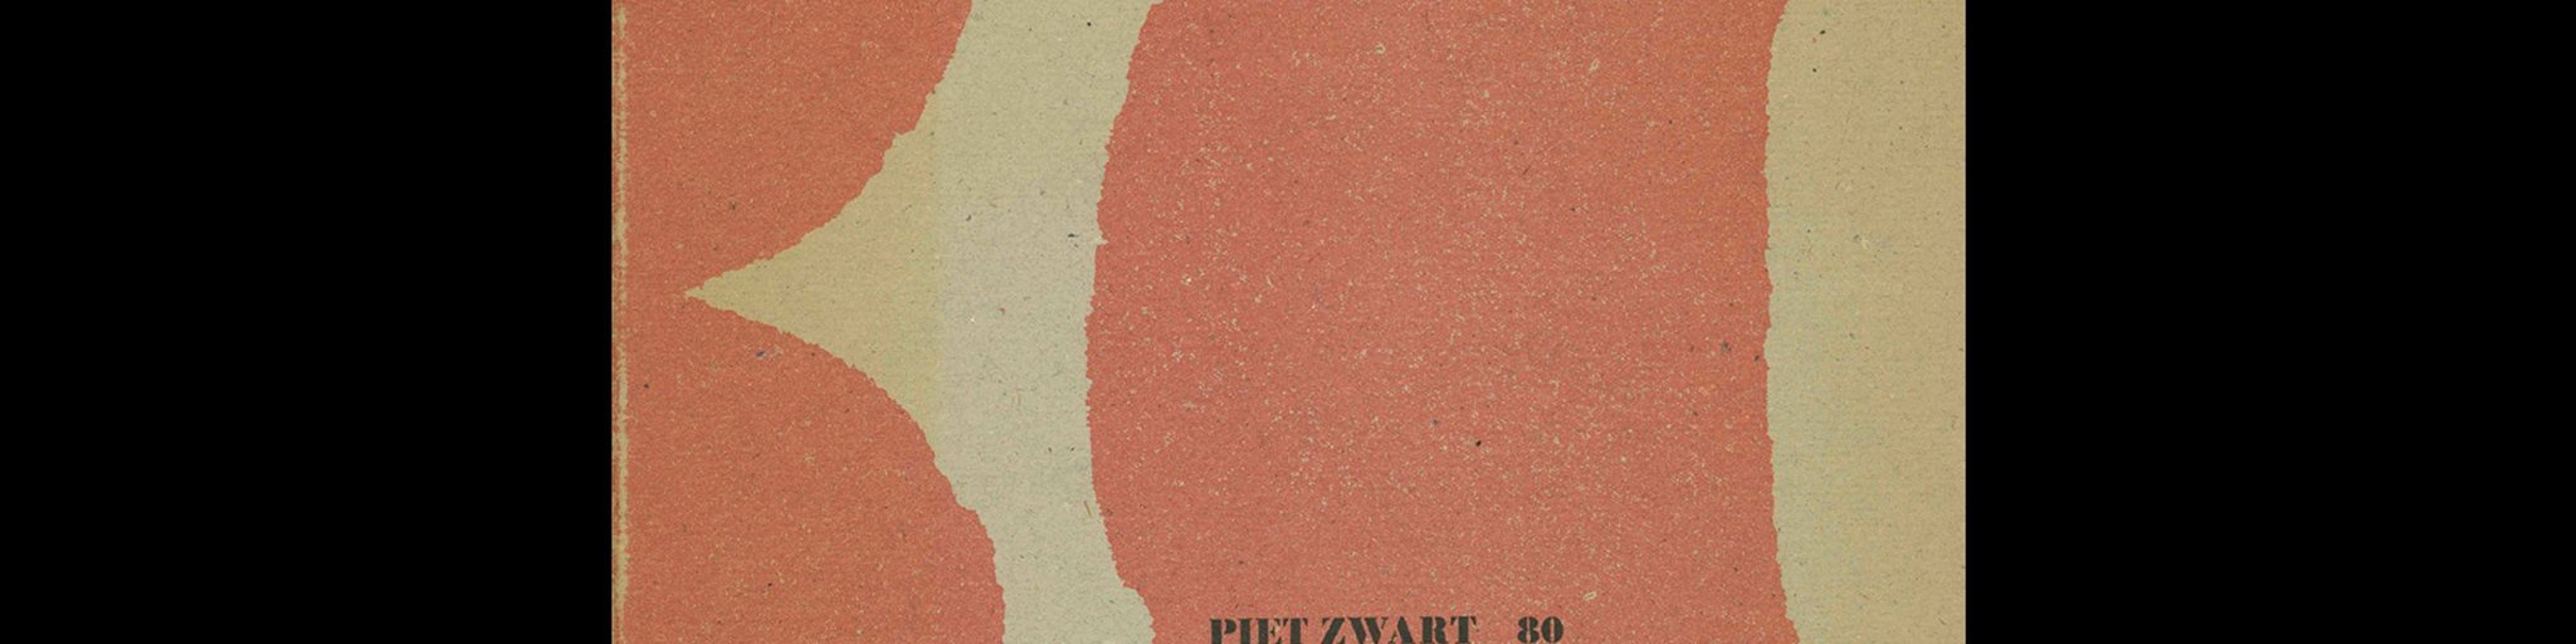 Keywords Sleutelwoorden, Piet Zwart 80, Staatsdrukkerij, 1966. Book design by Willem Sandberg